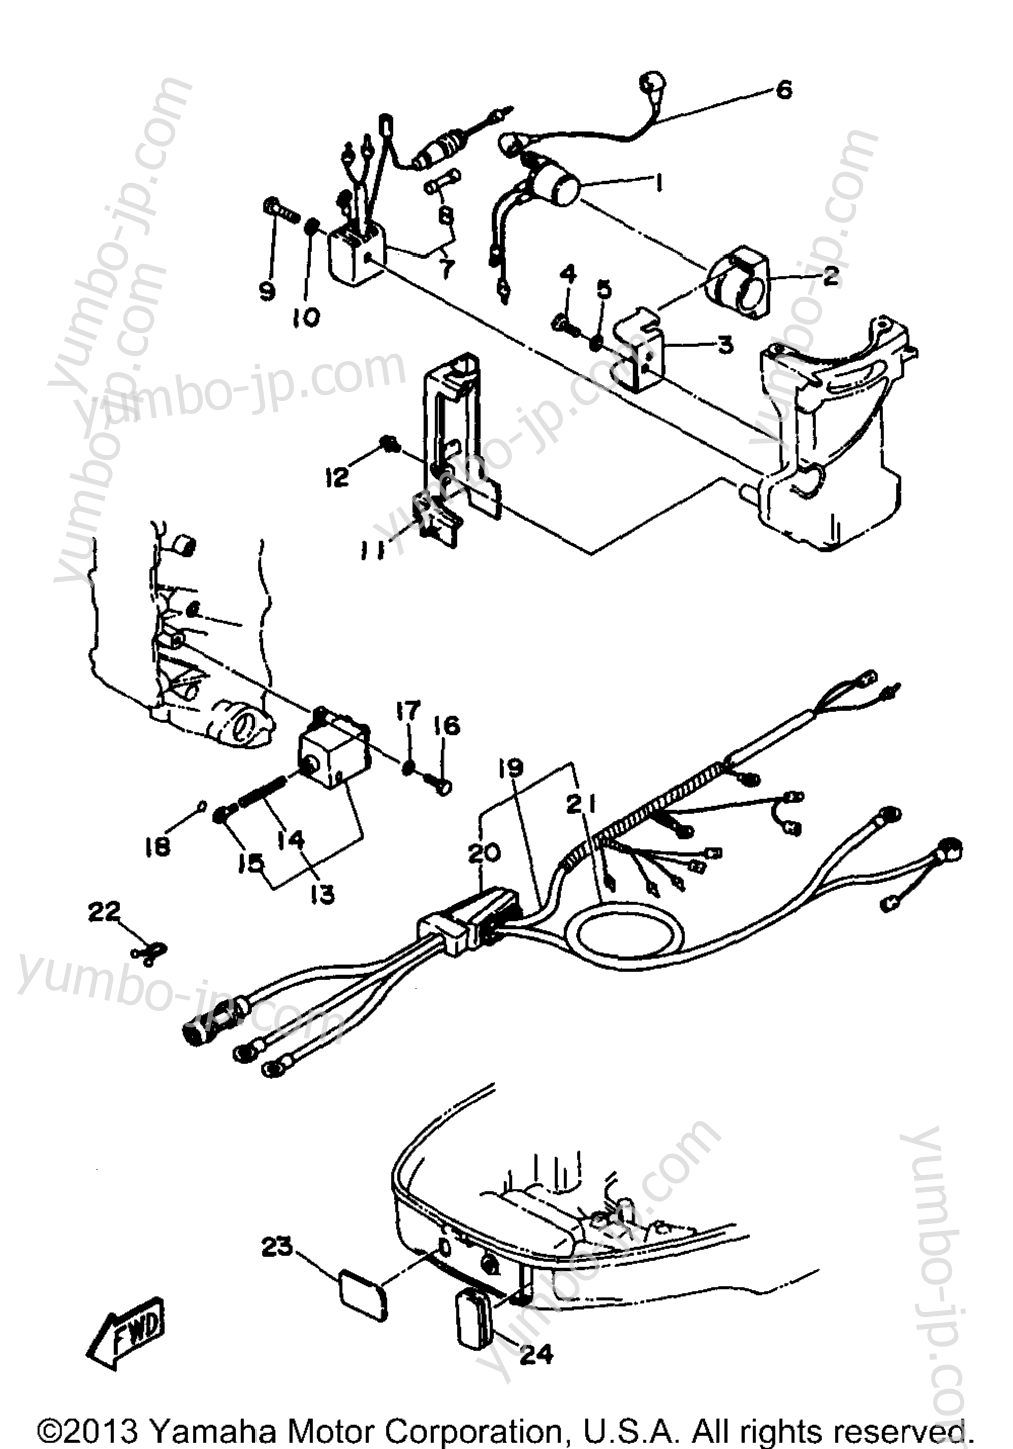 Electric Parts 2 (30Er) для лодочных моторов YAMAHA 30MSHV 1997 г.